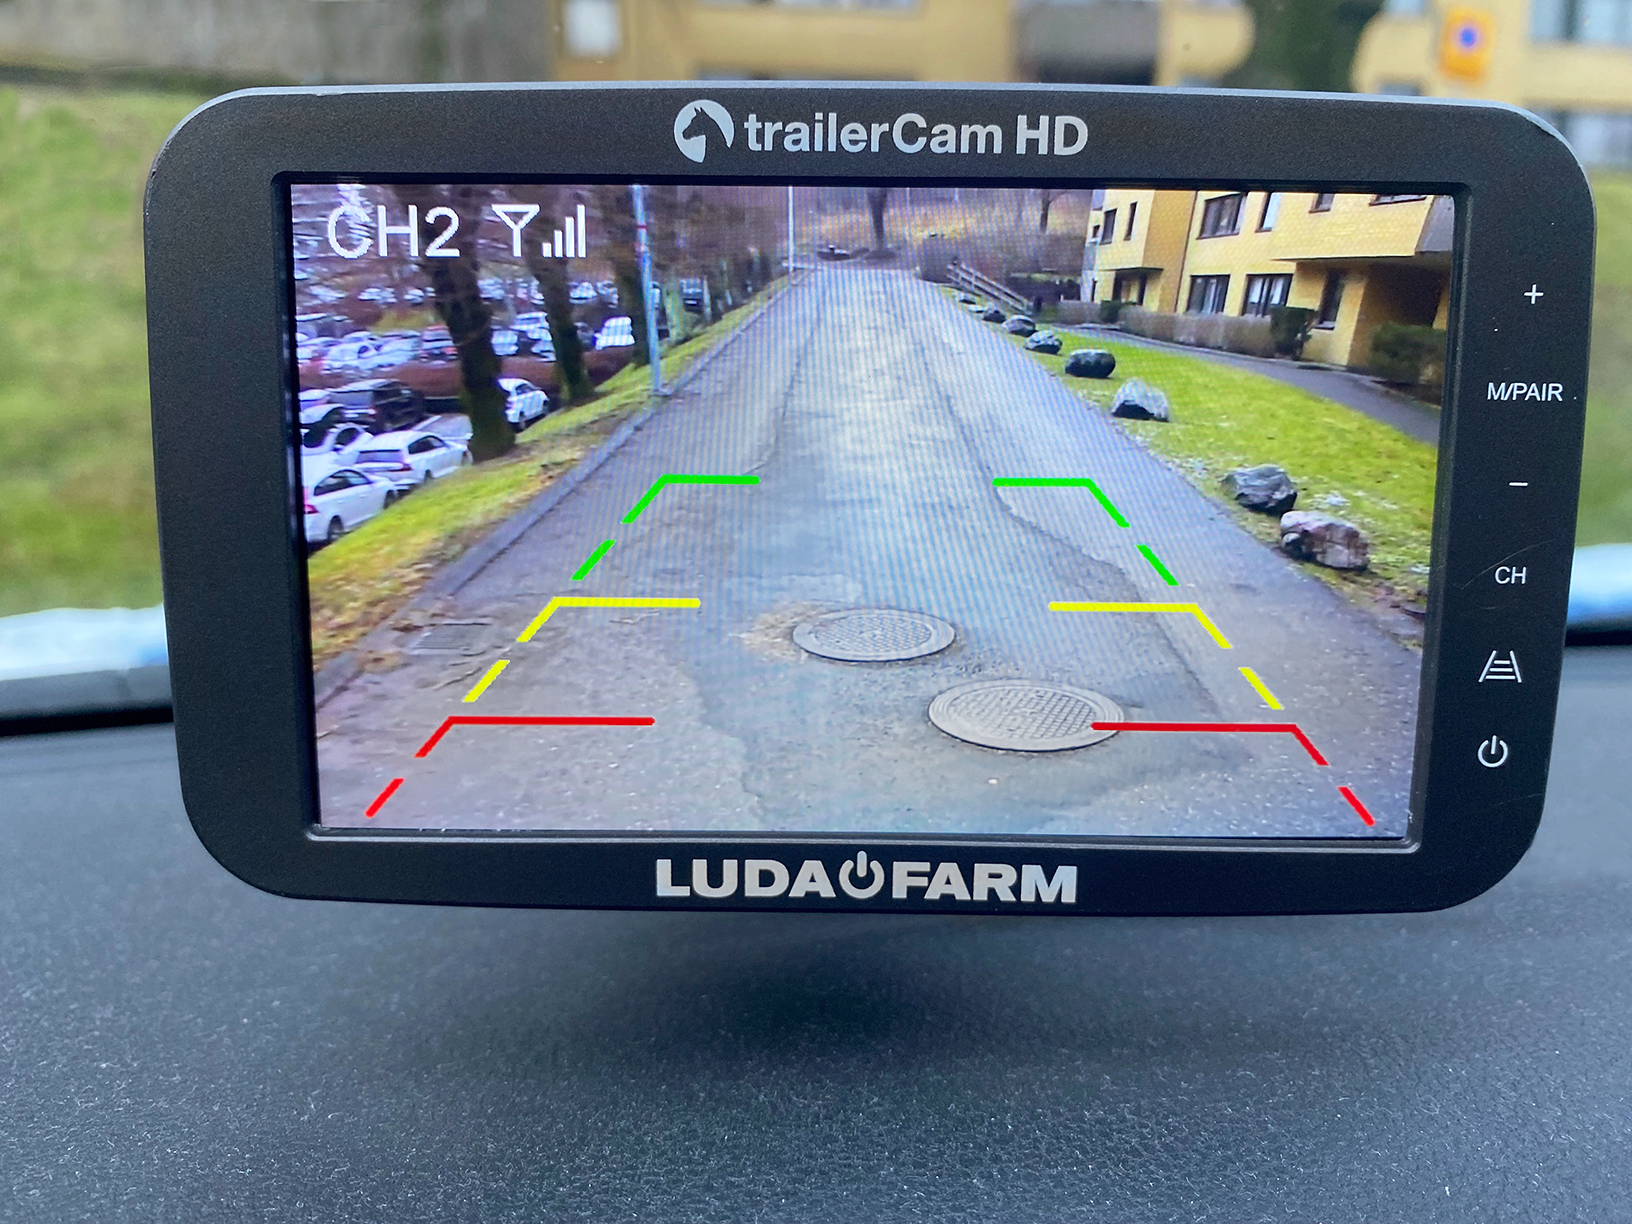 Caméra sans fil pour surveiller chevaux dans van, TrailerCam HD de LudaFarm  - Coffia